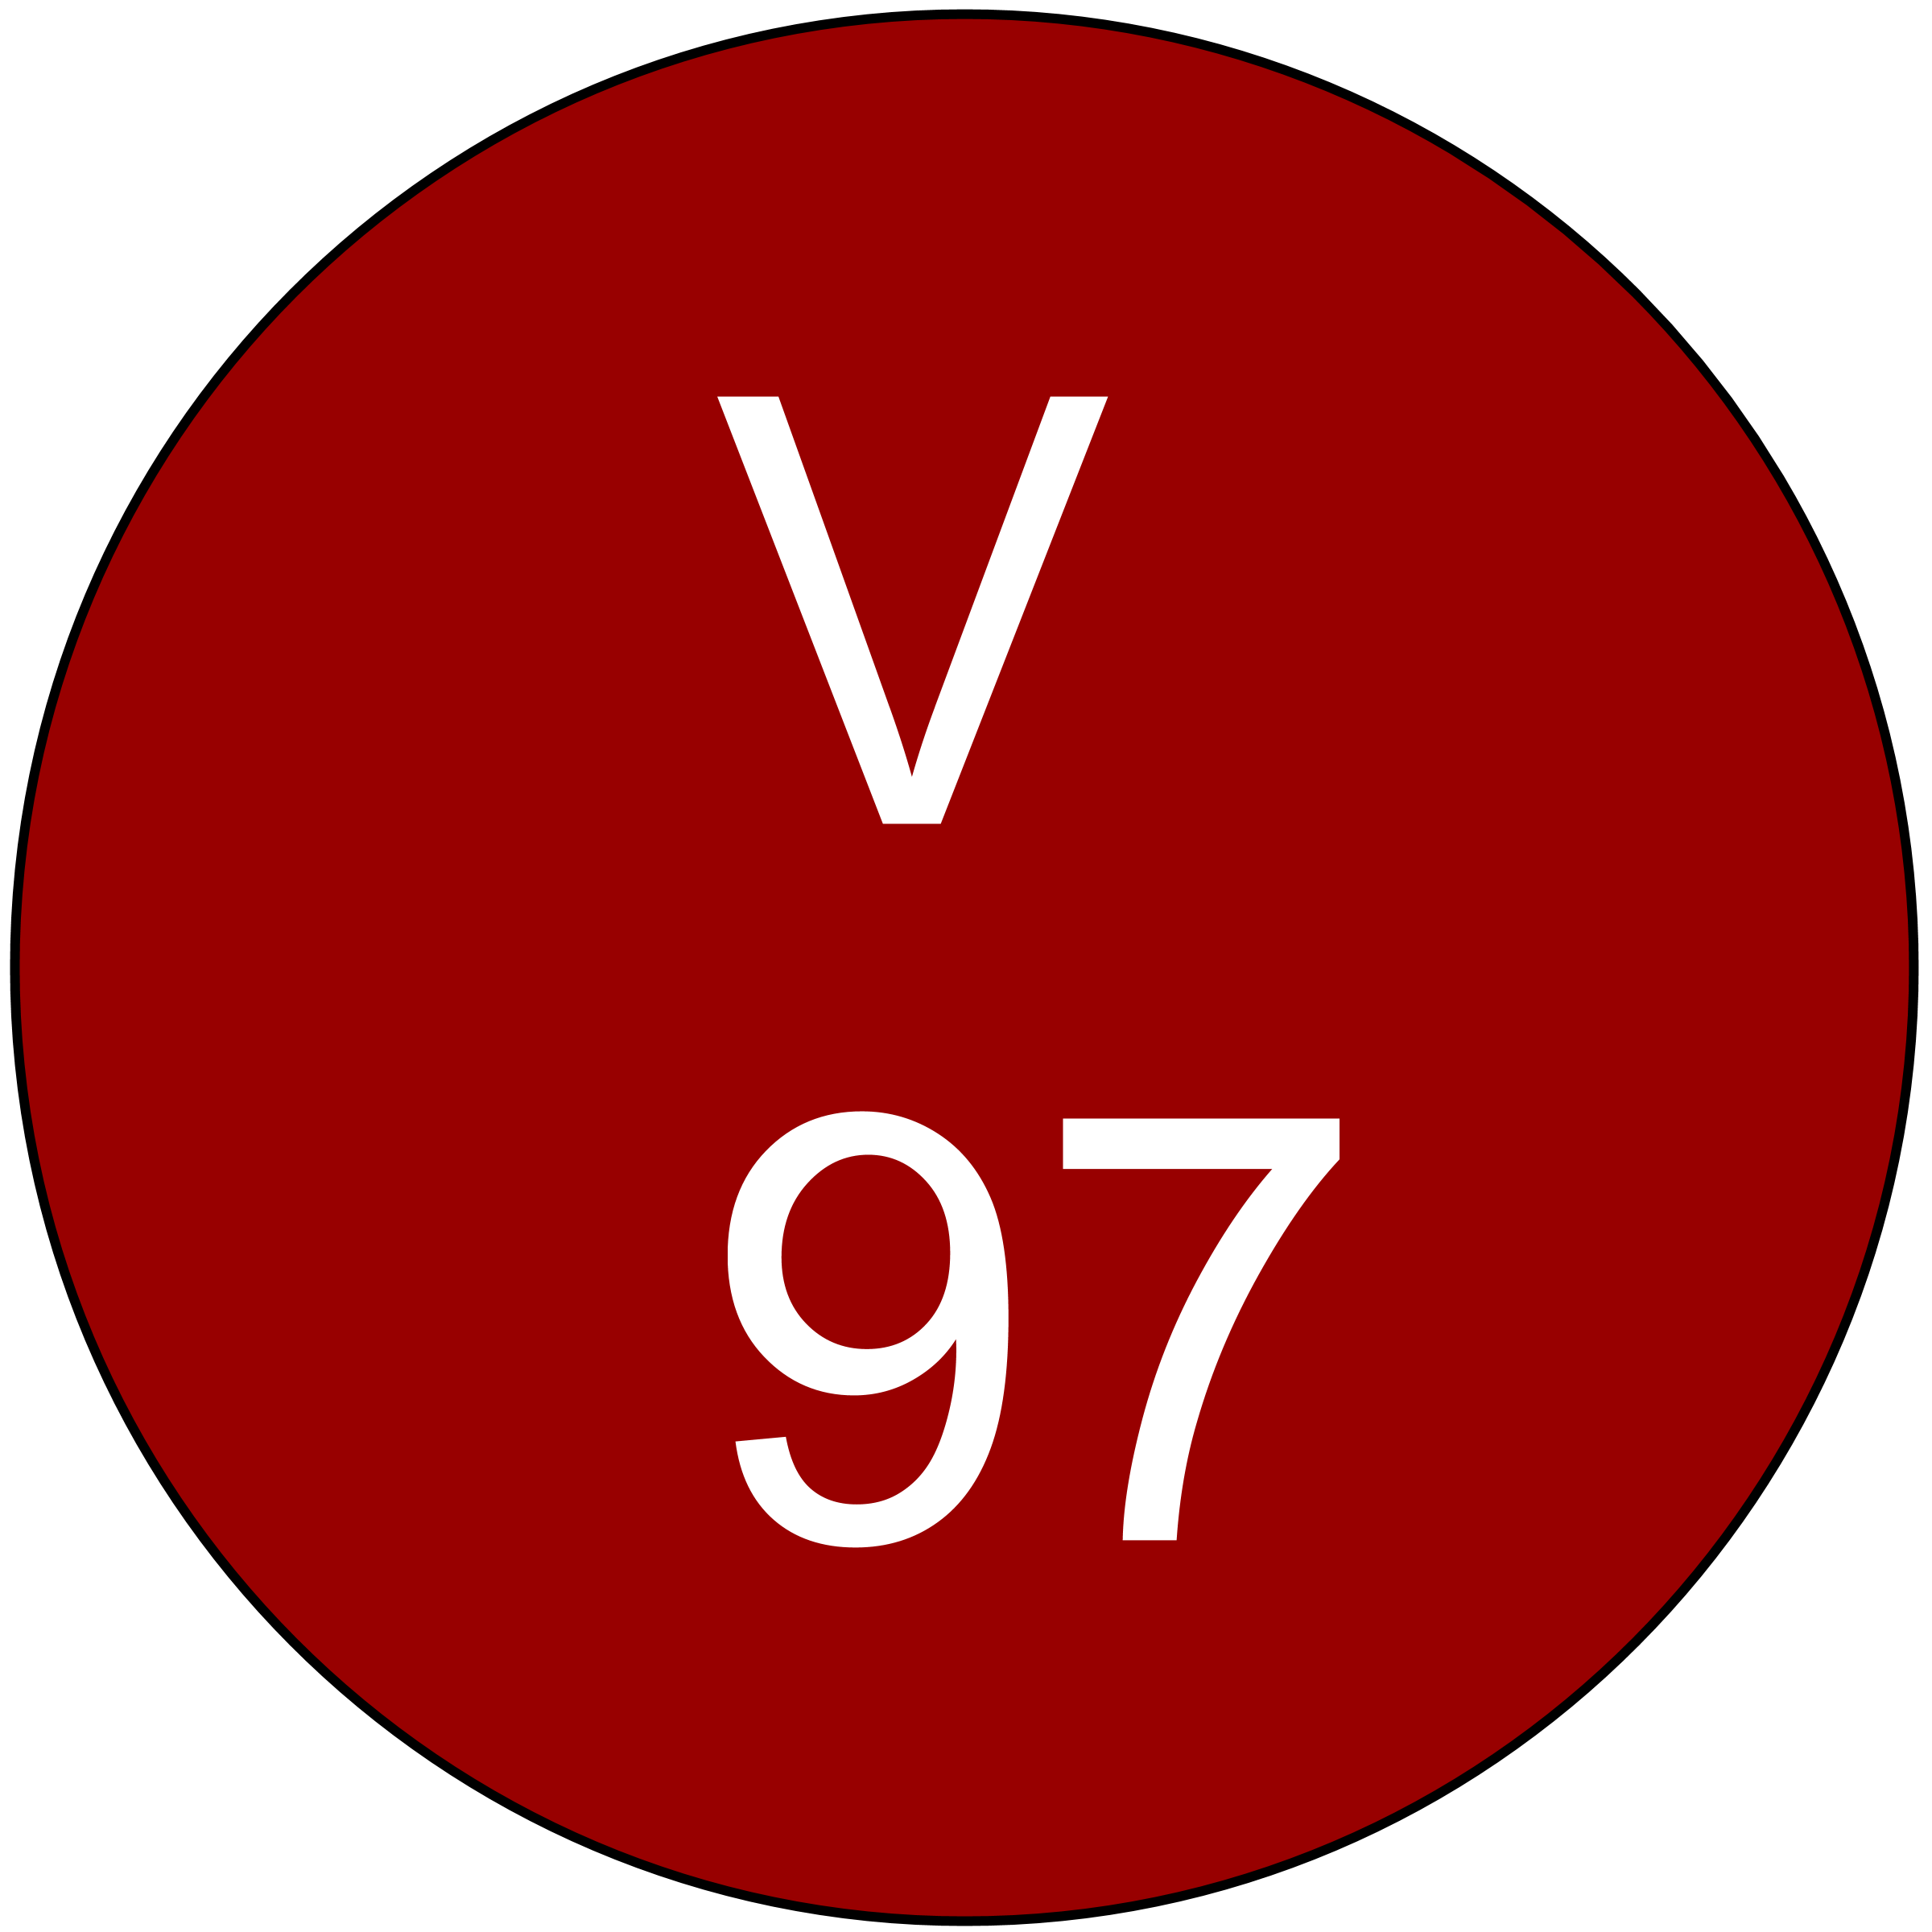 vinous-97-ratings